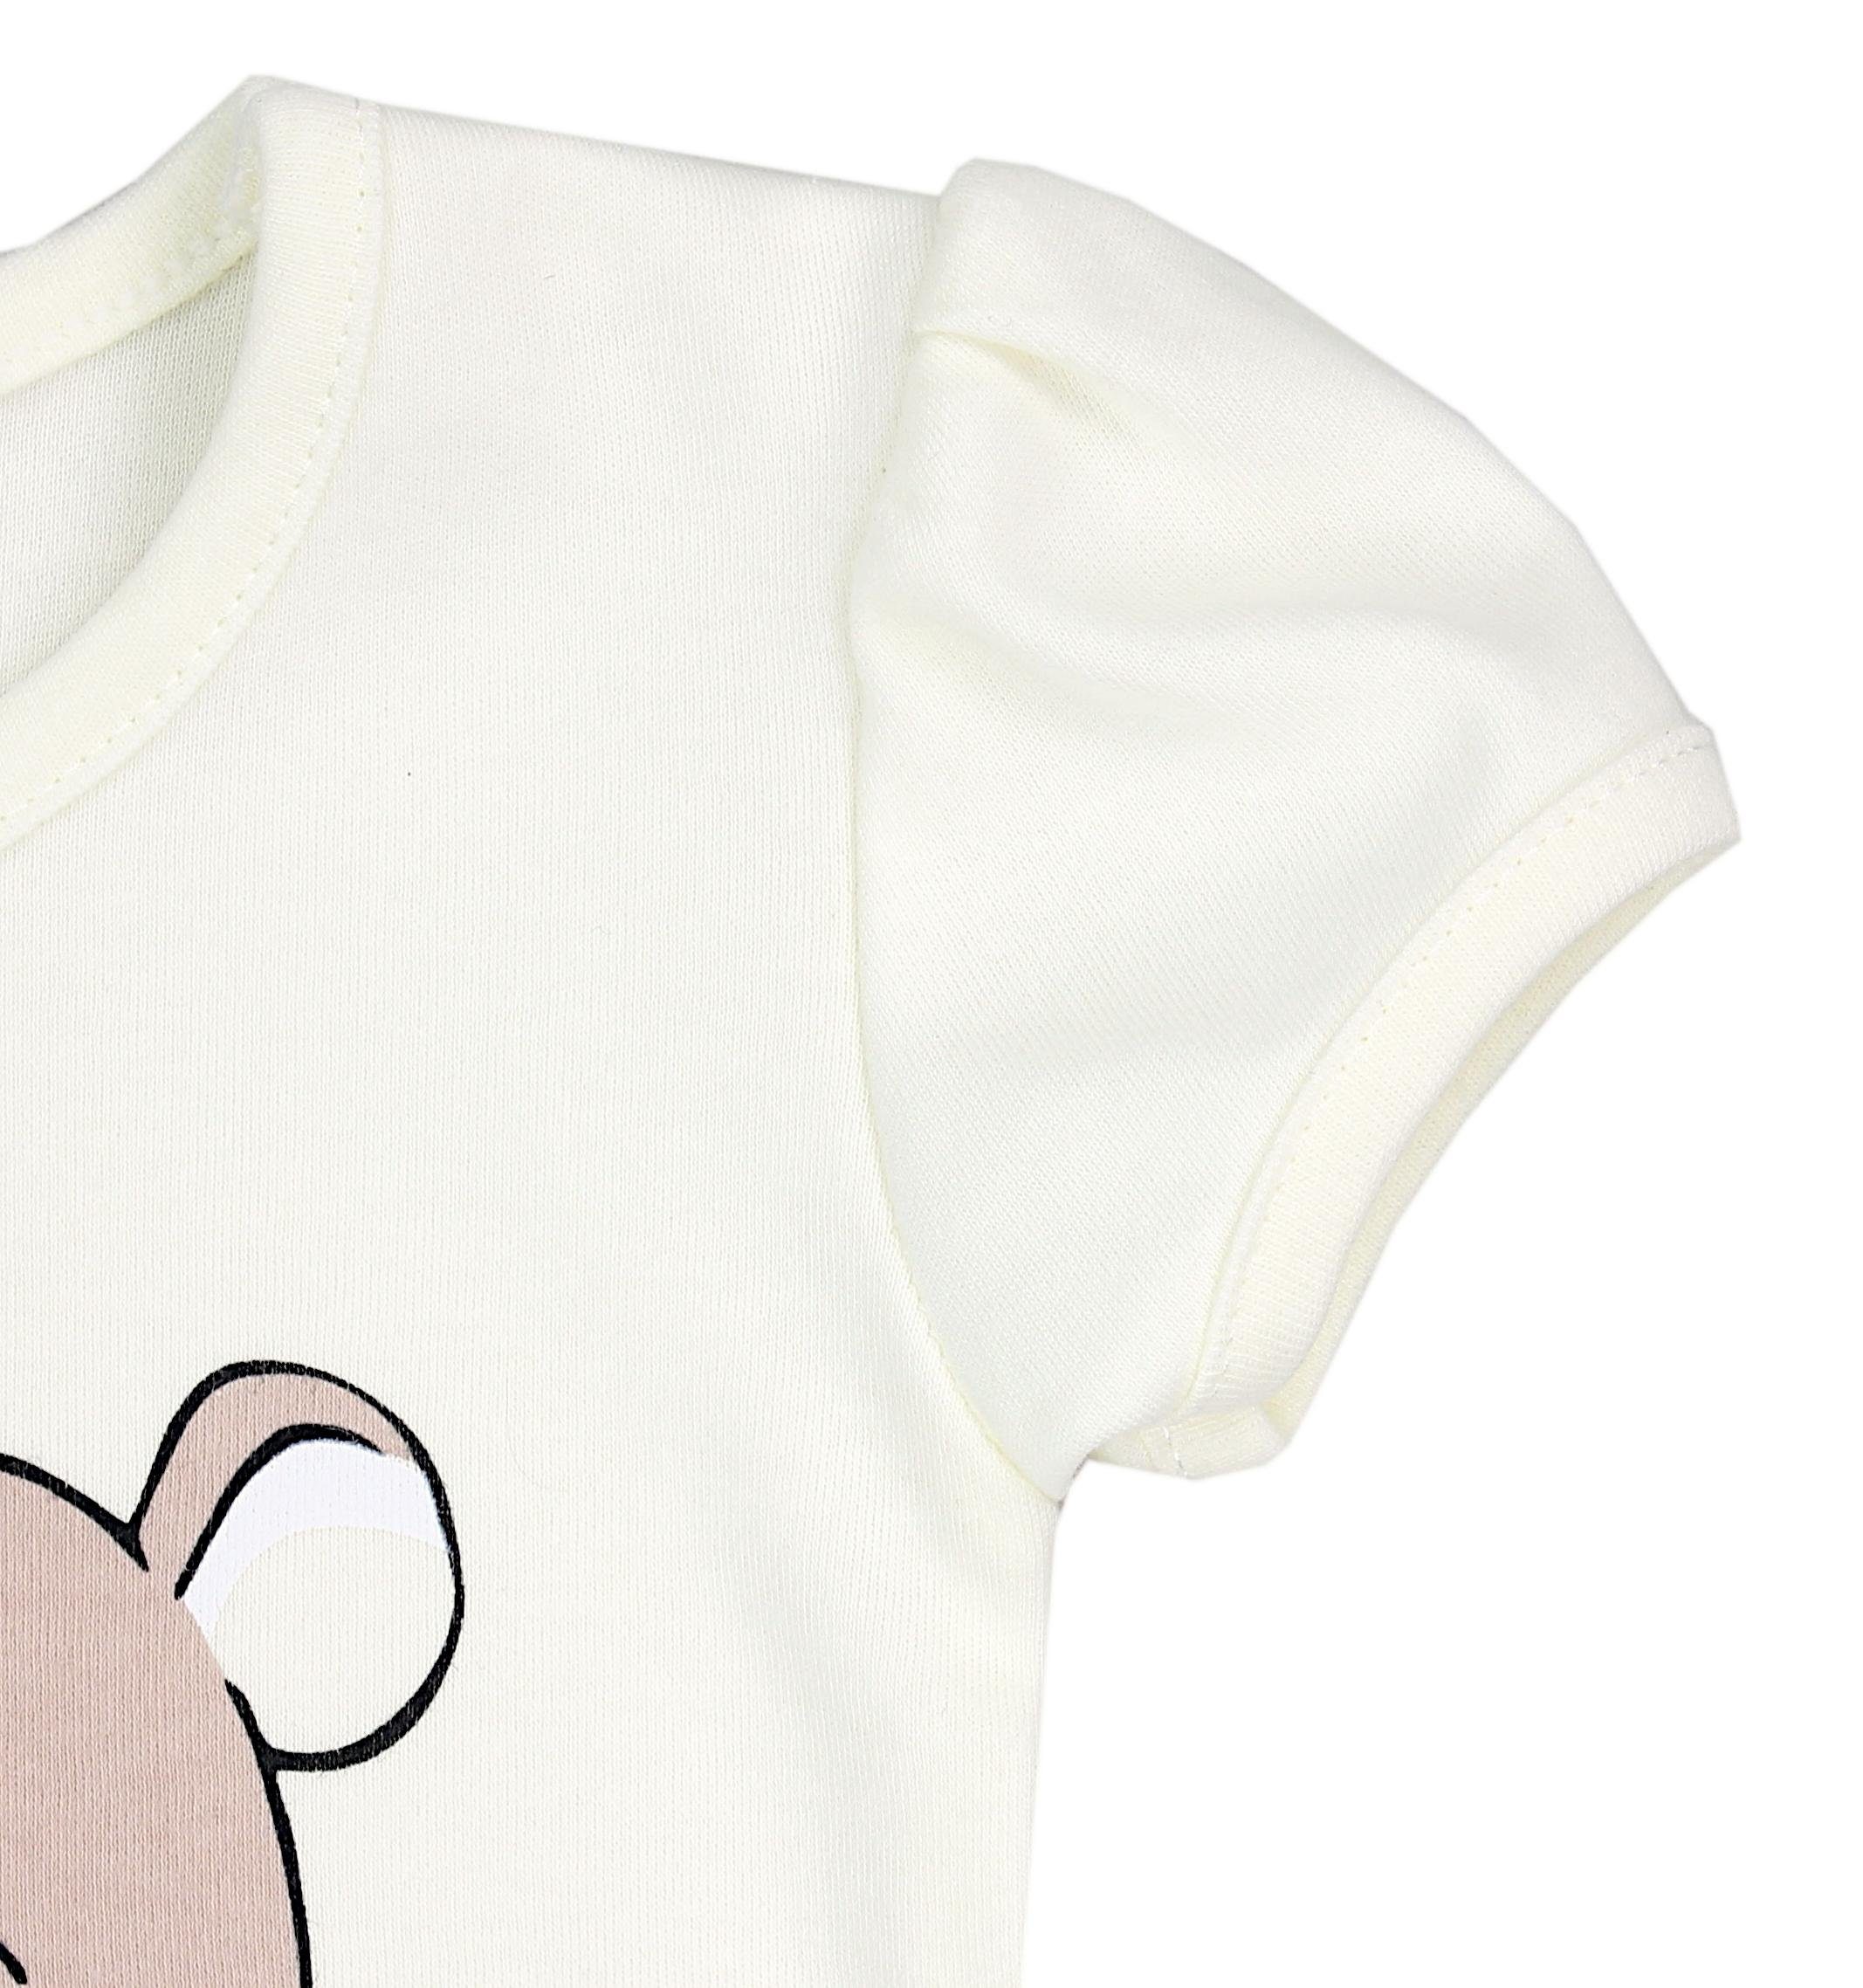 TupTam Shirt & Hose TupTam Mädchen Sommer Bekleidung Teddy Beige Ecri Set Love T-Shirt Baby Shorts